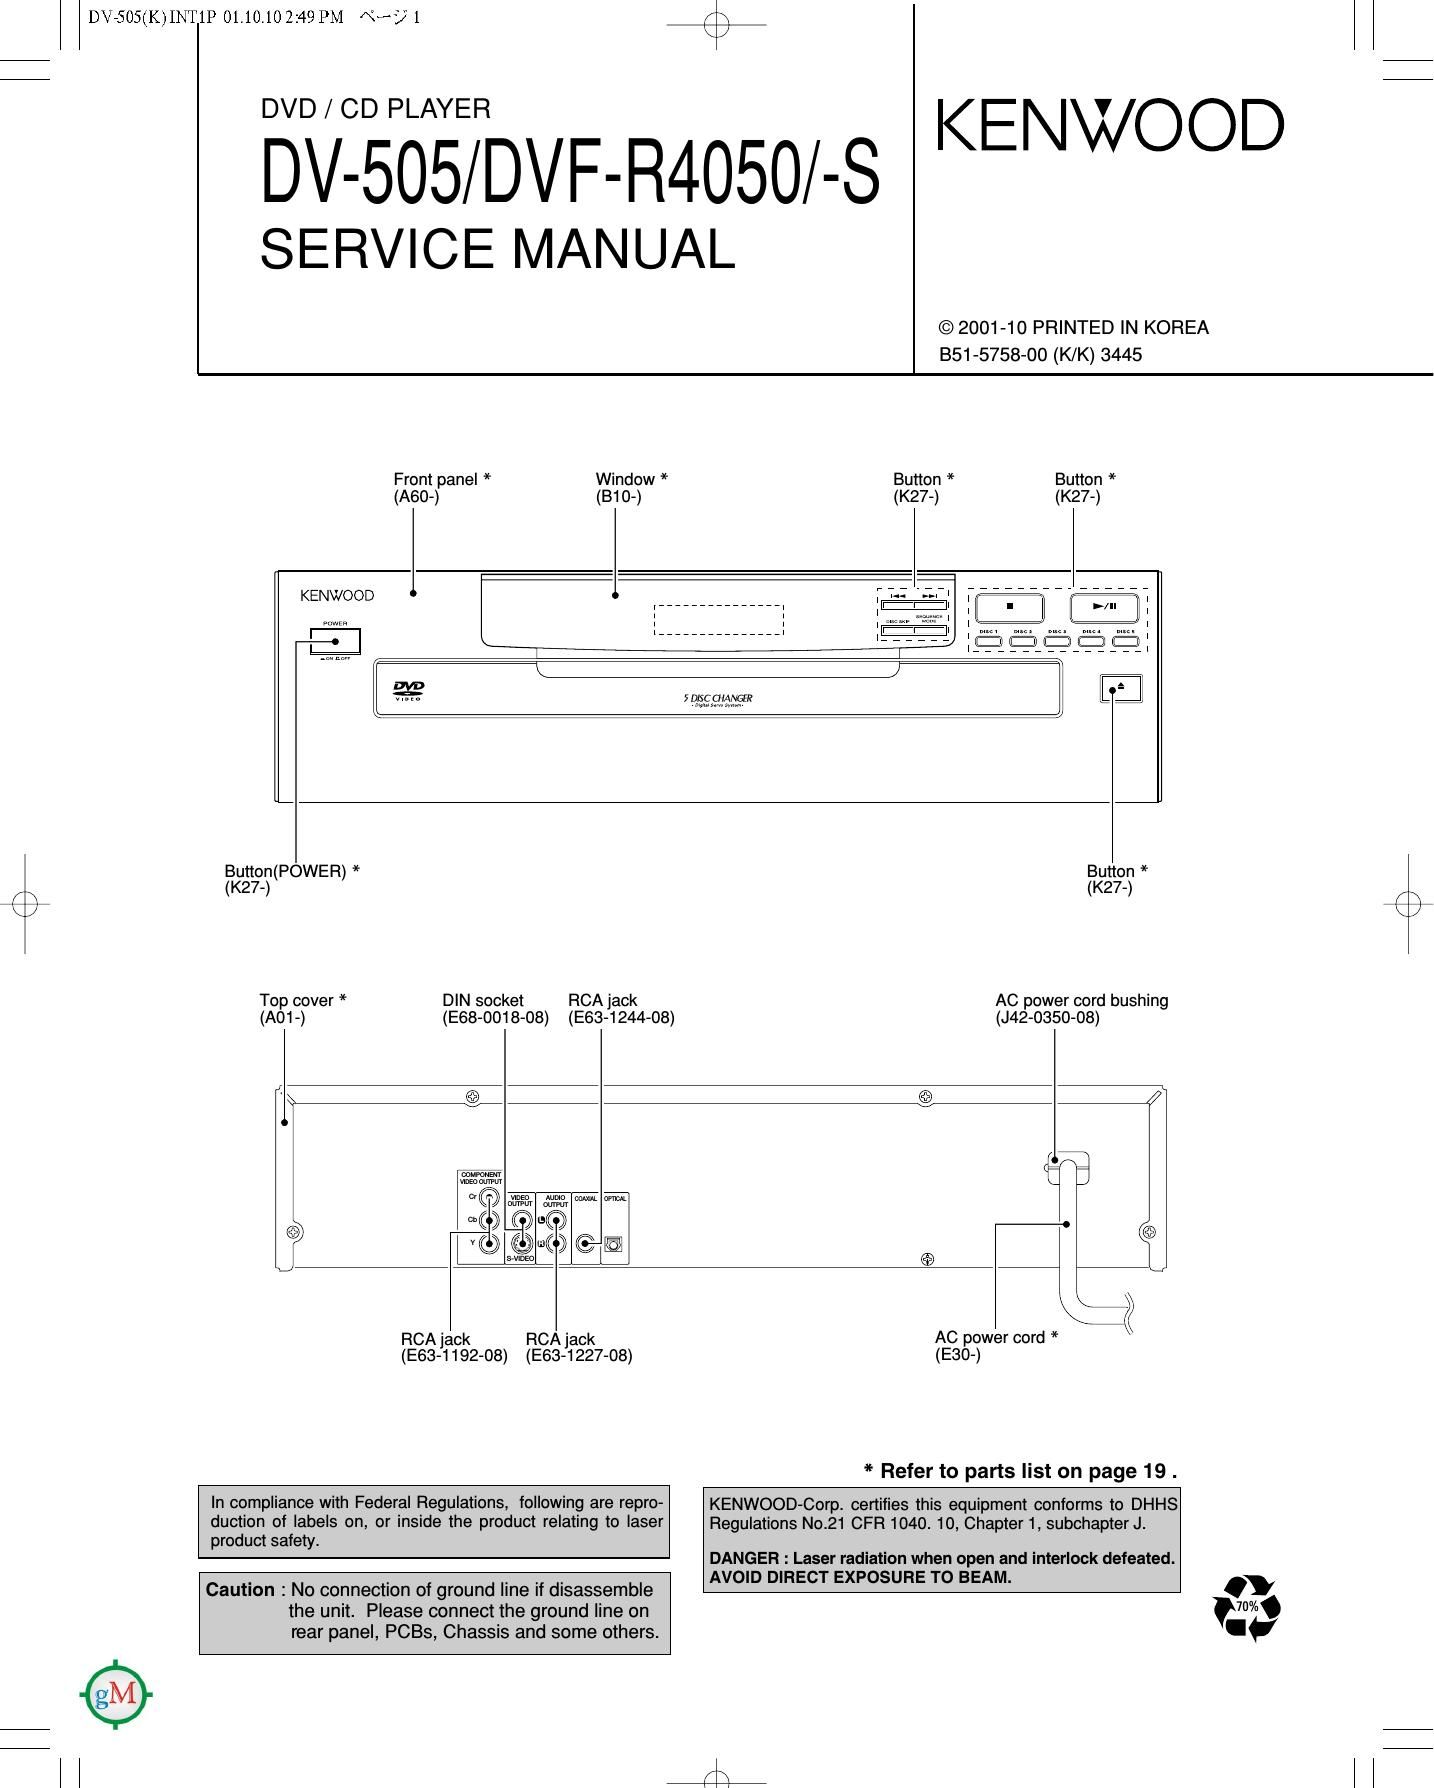 Kenwood DV 505 Service Manual